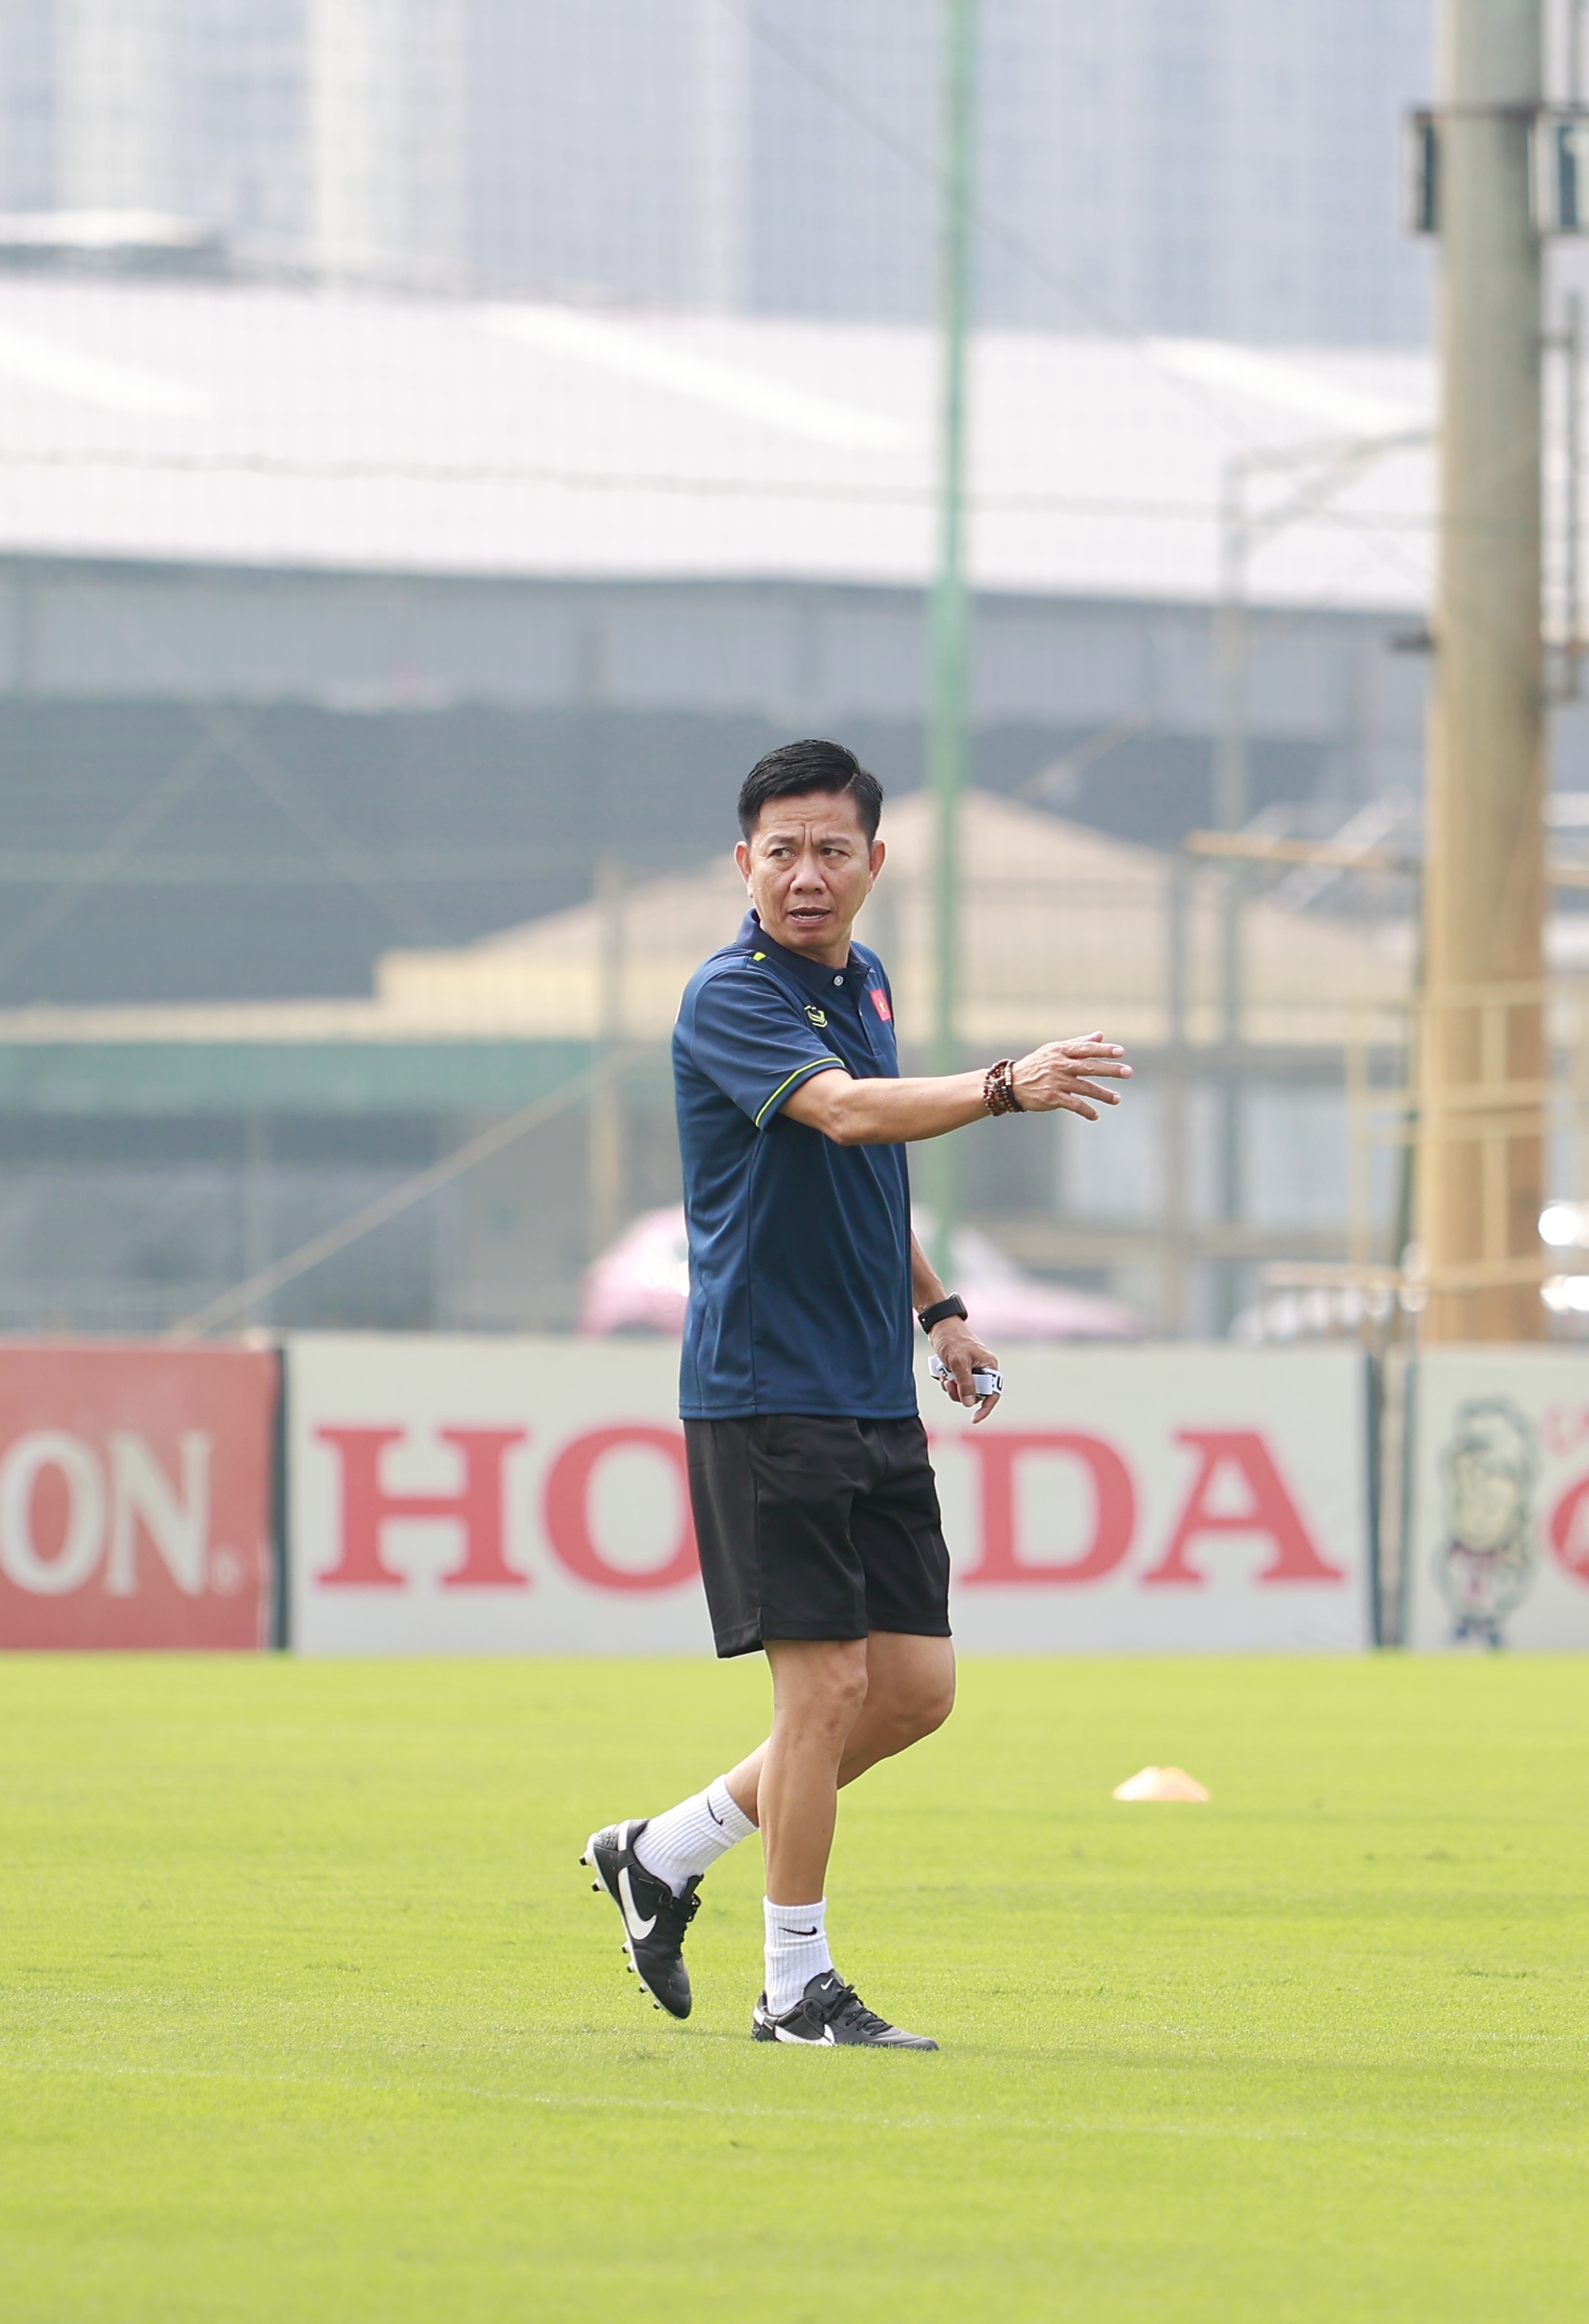 Ngắn nhìn vẻ điển trai của tiền đạo chơi bóng ở Hàn Quốc của U23 Việt Nam - Ảnh 11.